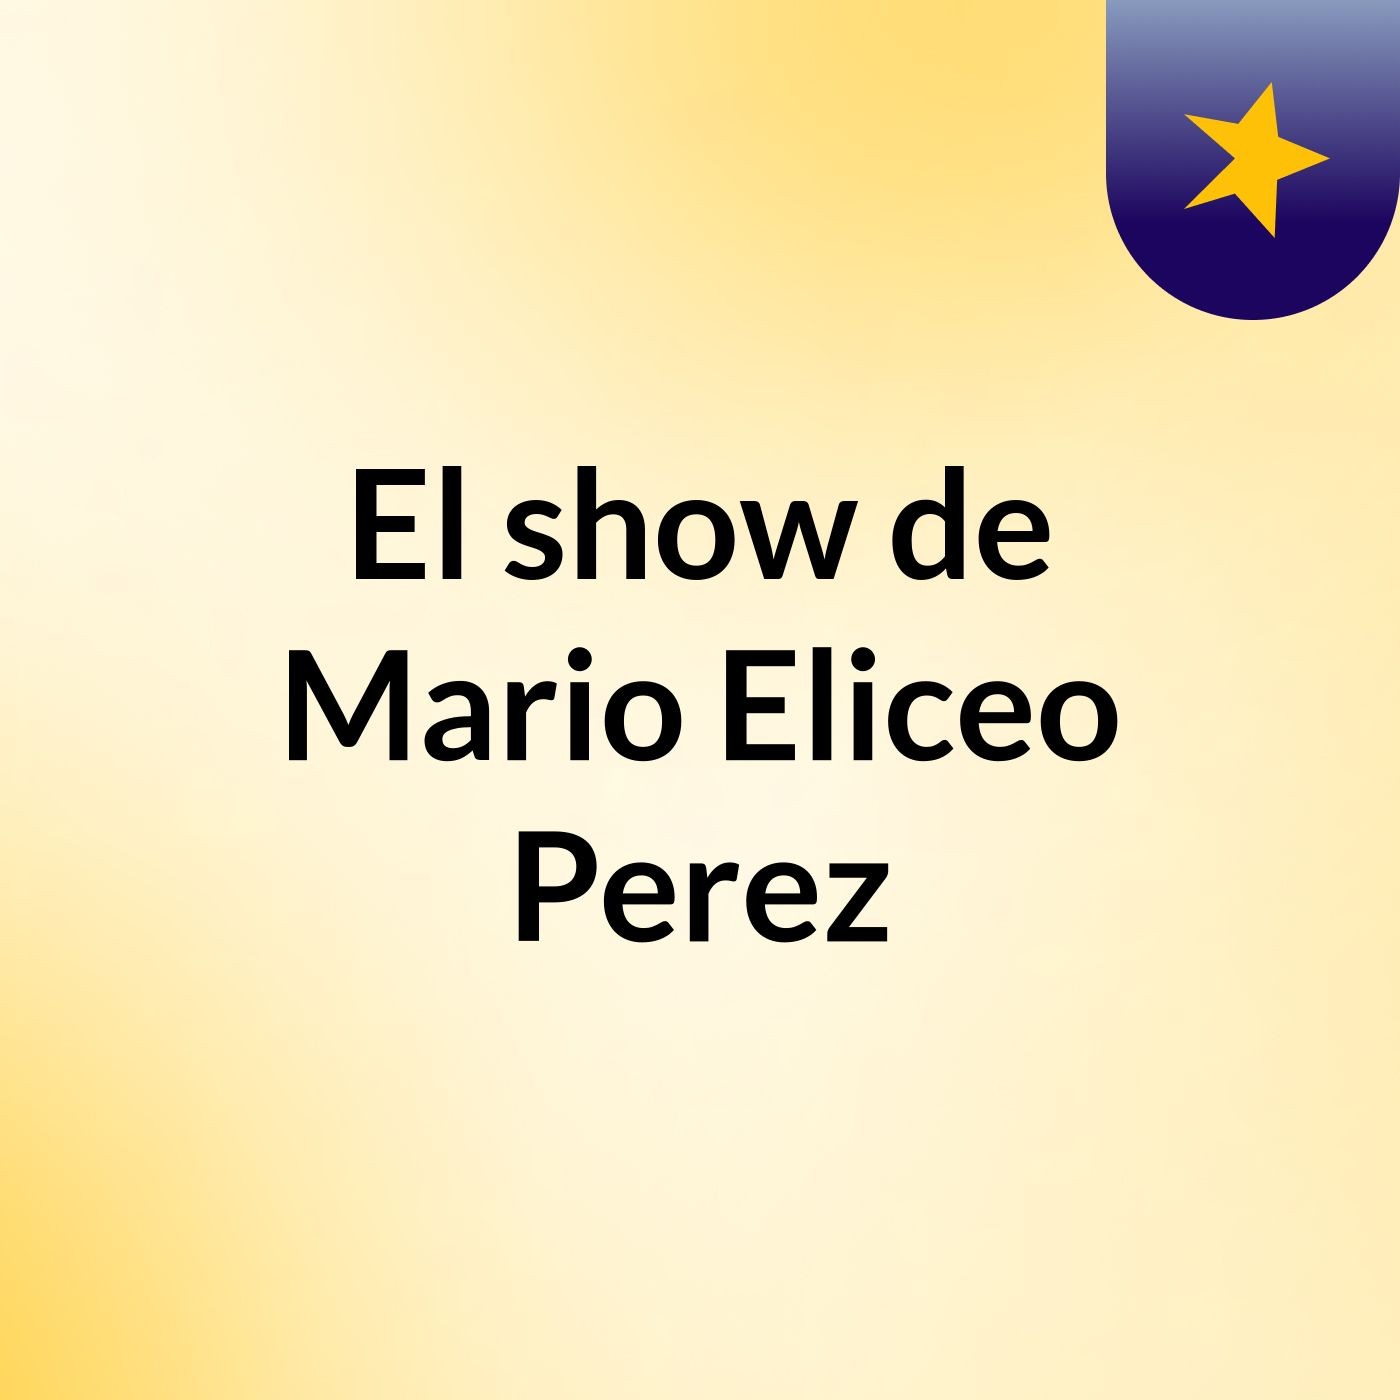 El show de Mario Eliceo Perez